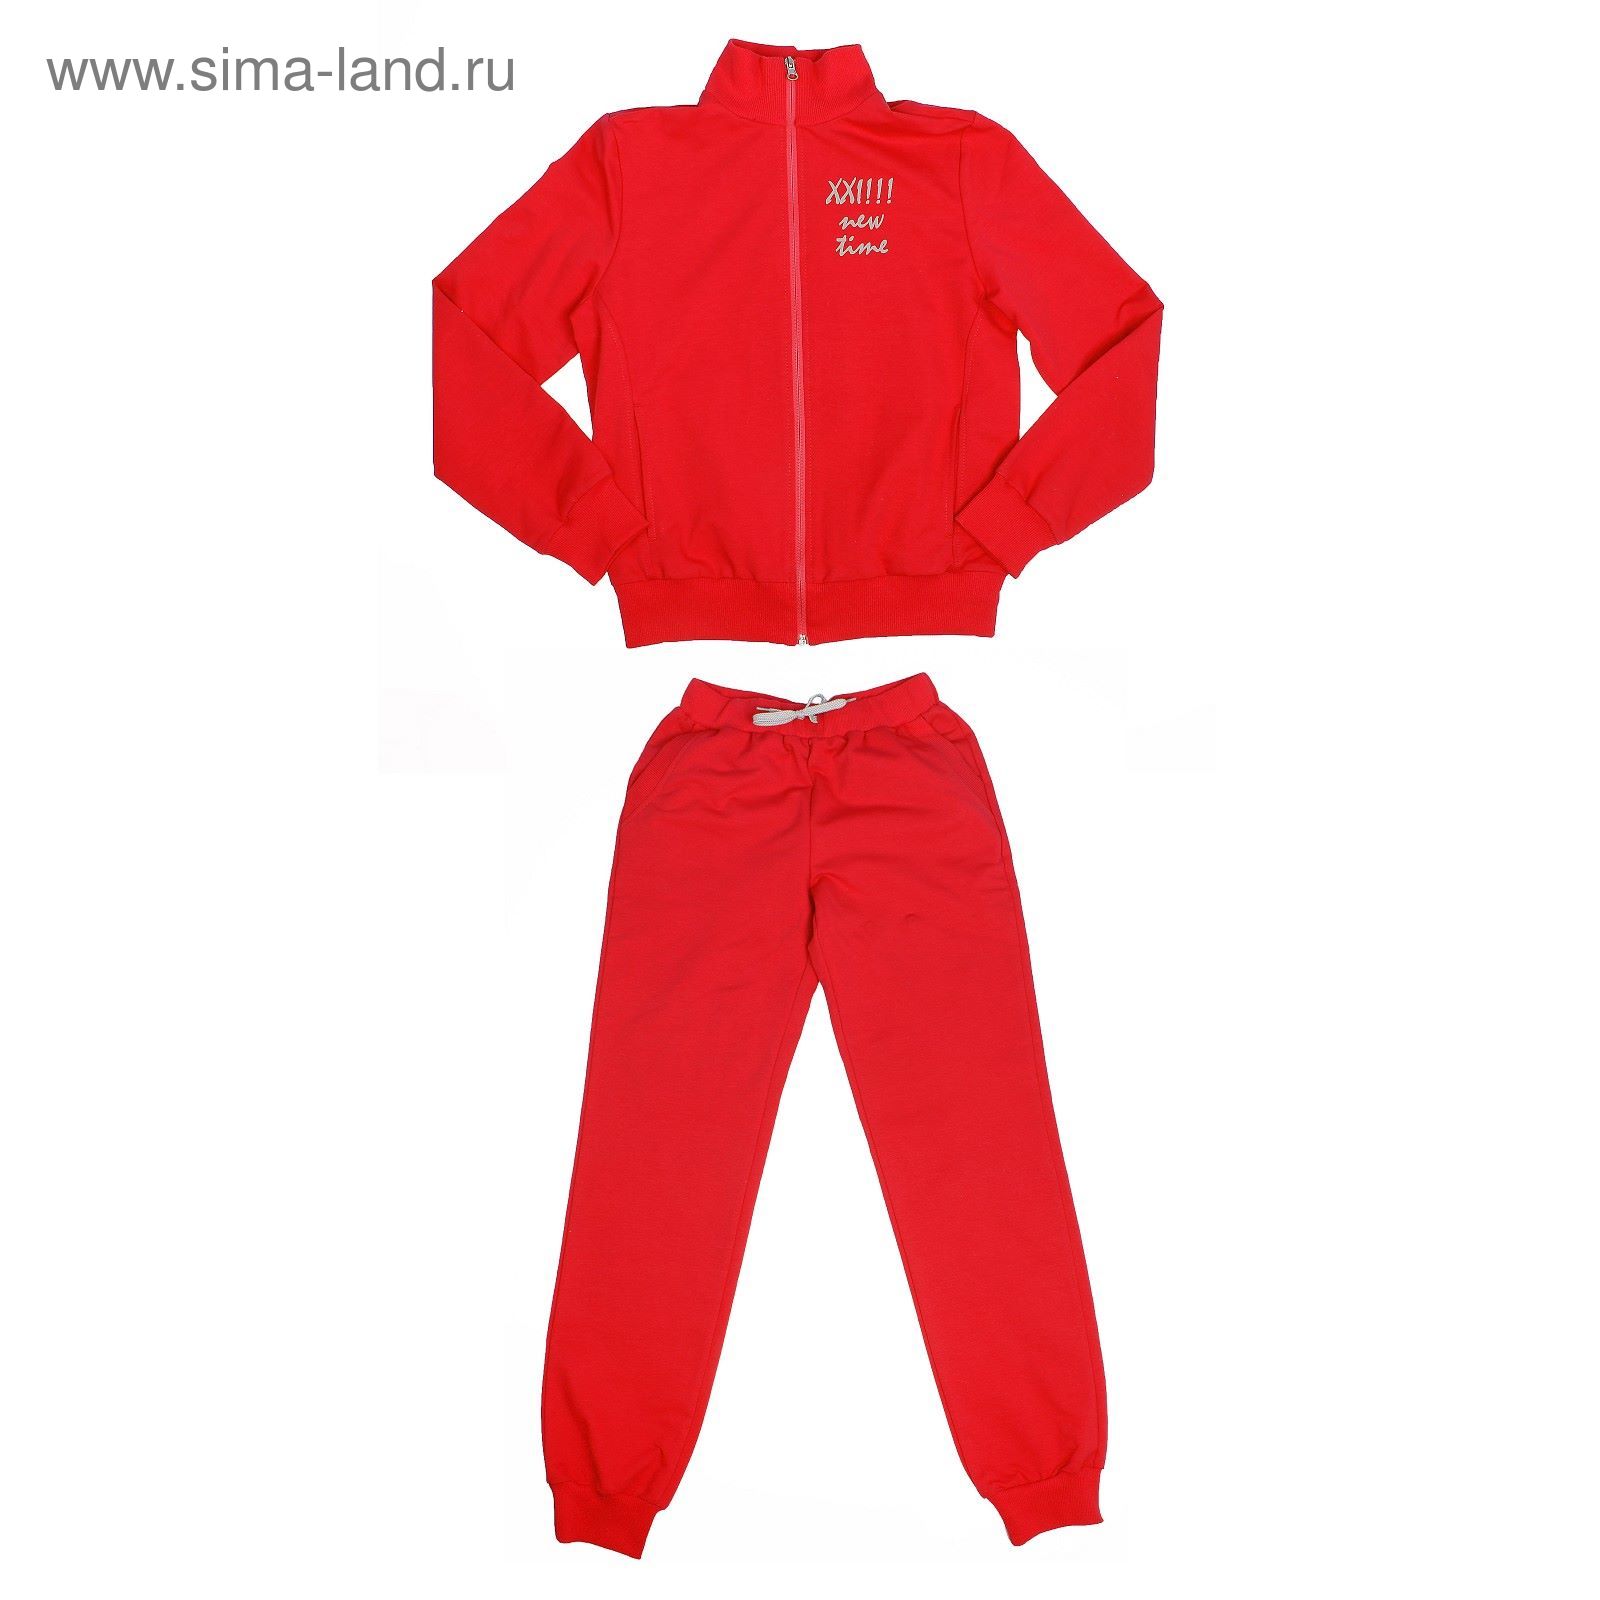 Красный спортивный костюм для мальчика